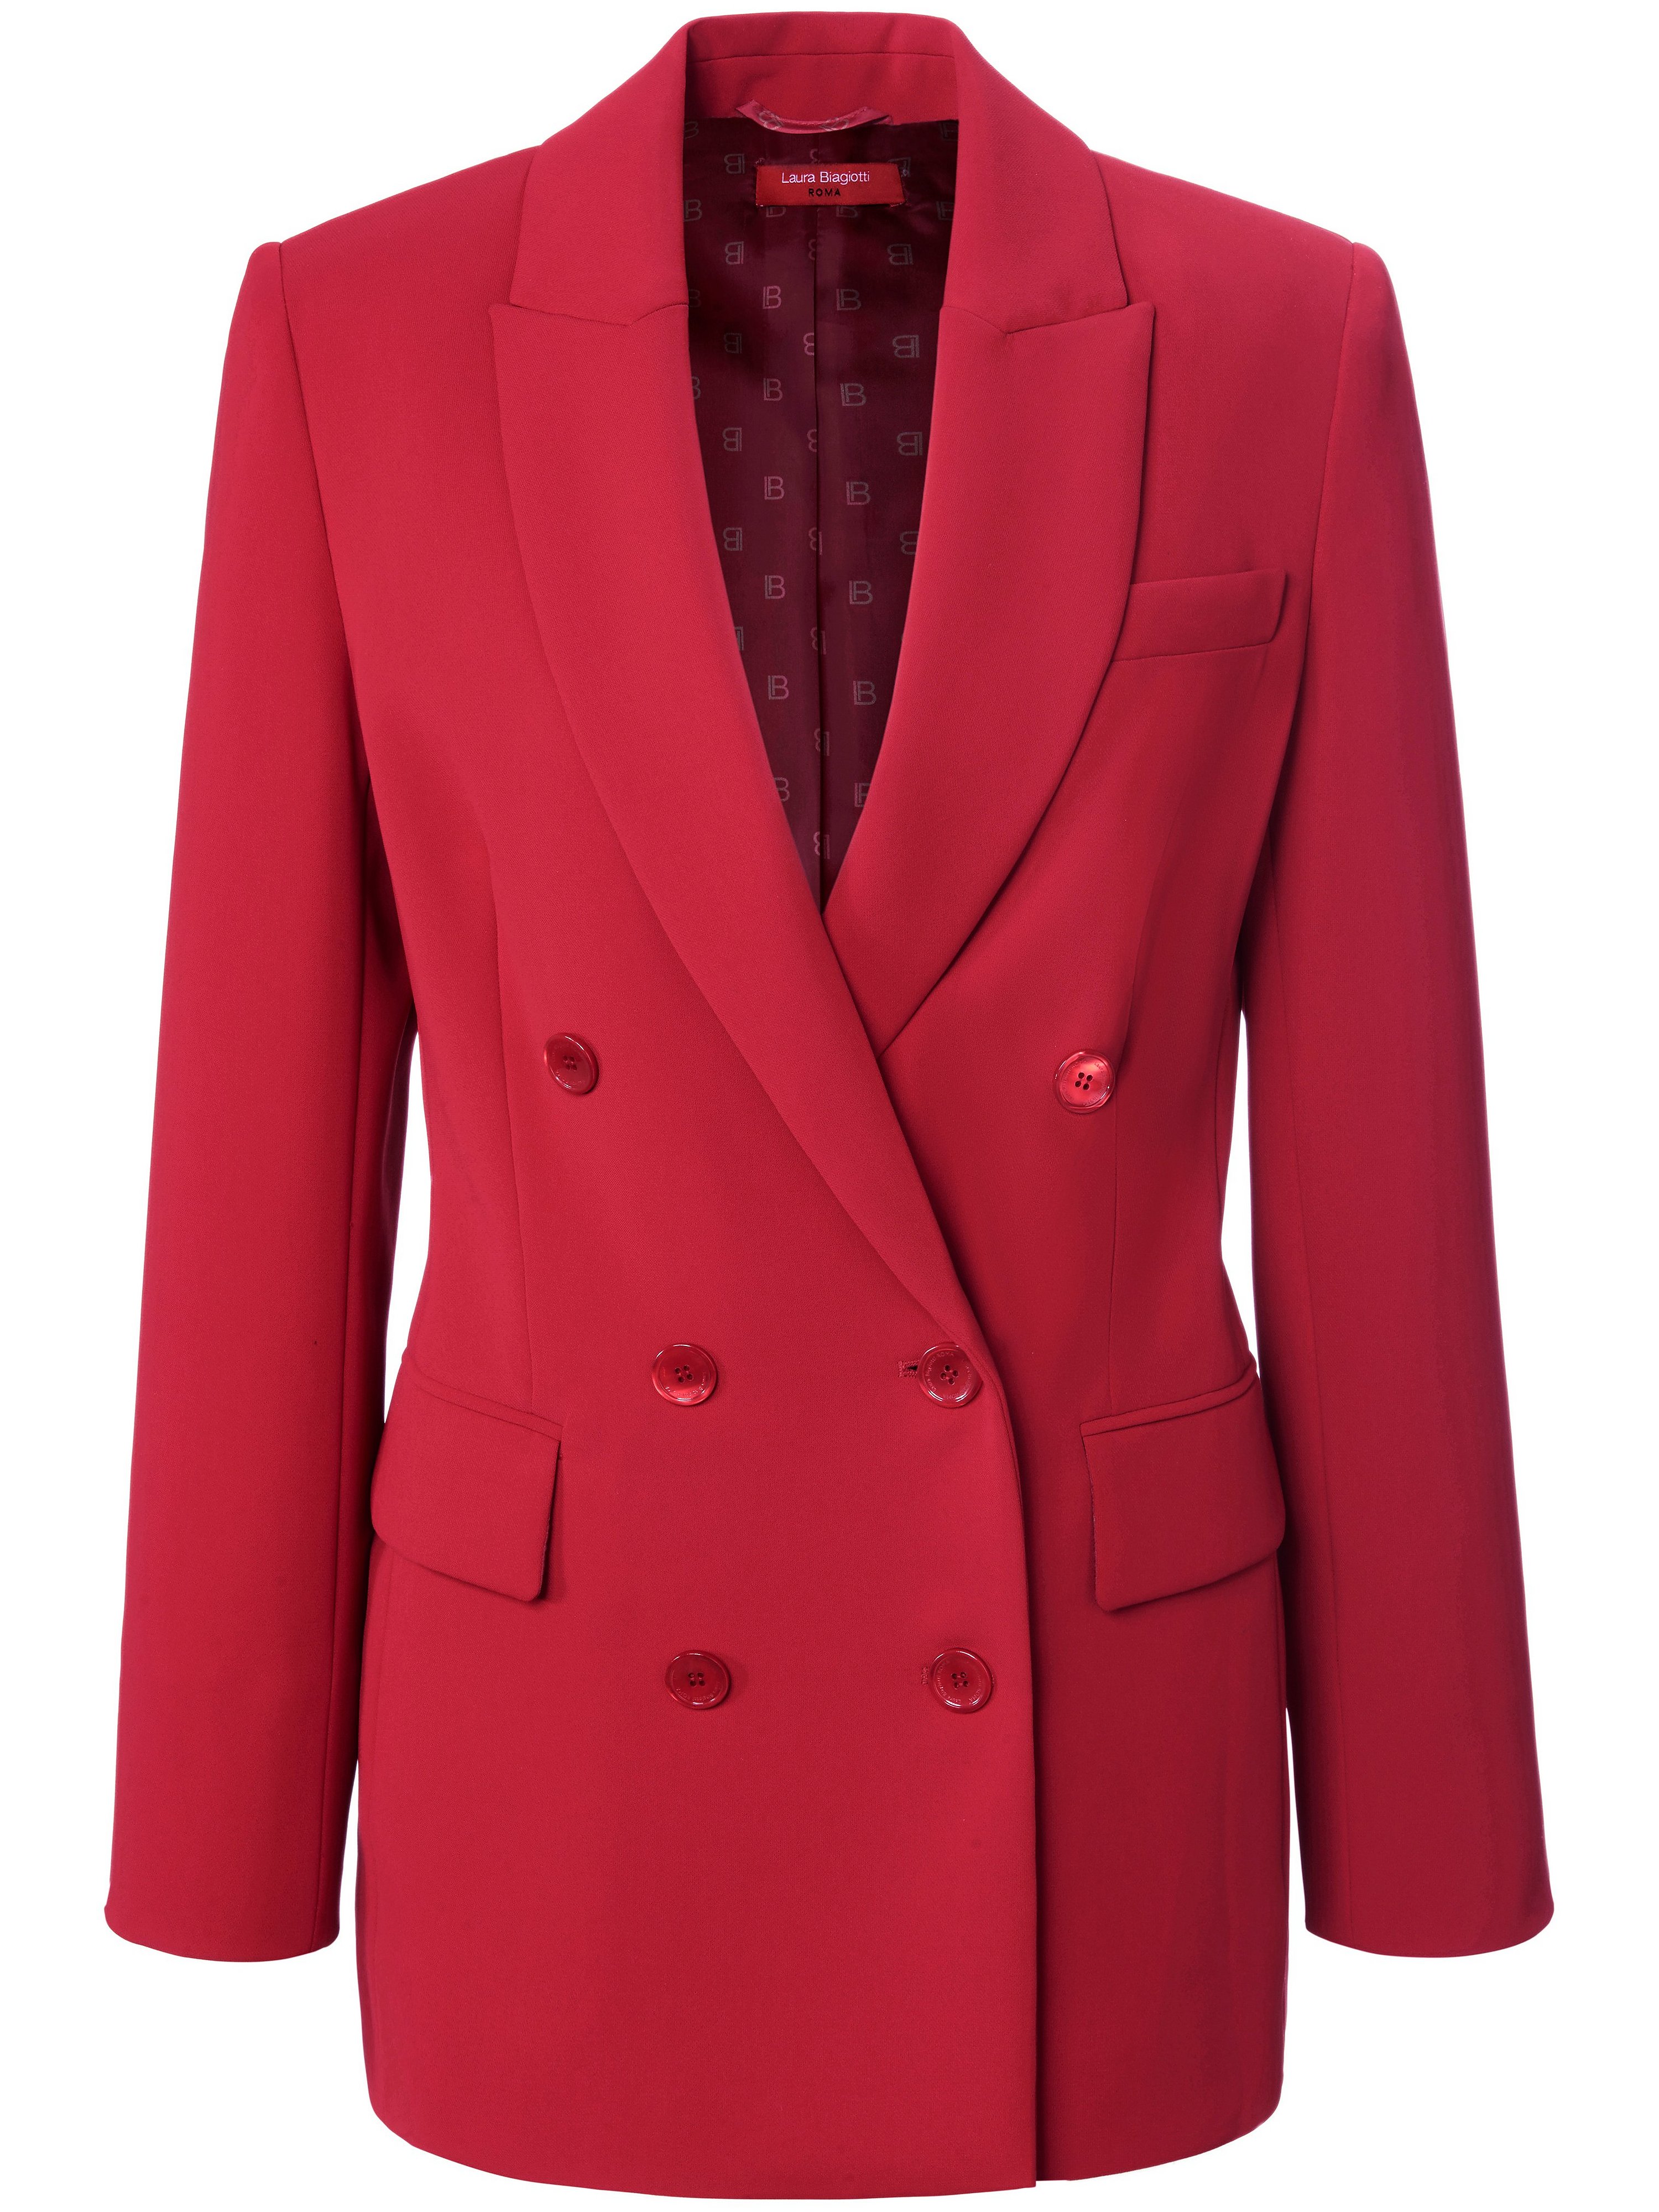 Le blazer long avec poches passepoilées à rabat  Laura Biagiotti ROMA rouge taille 50